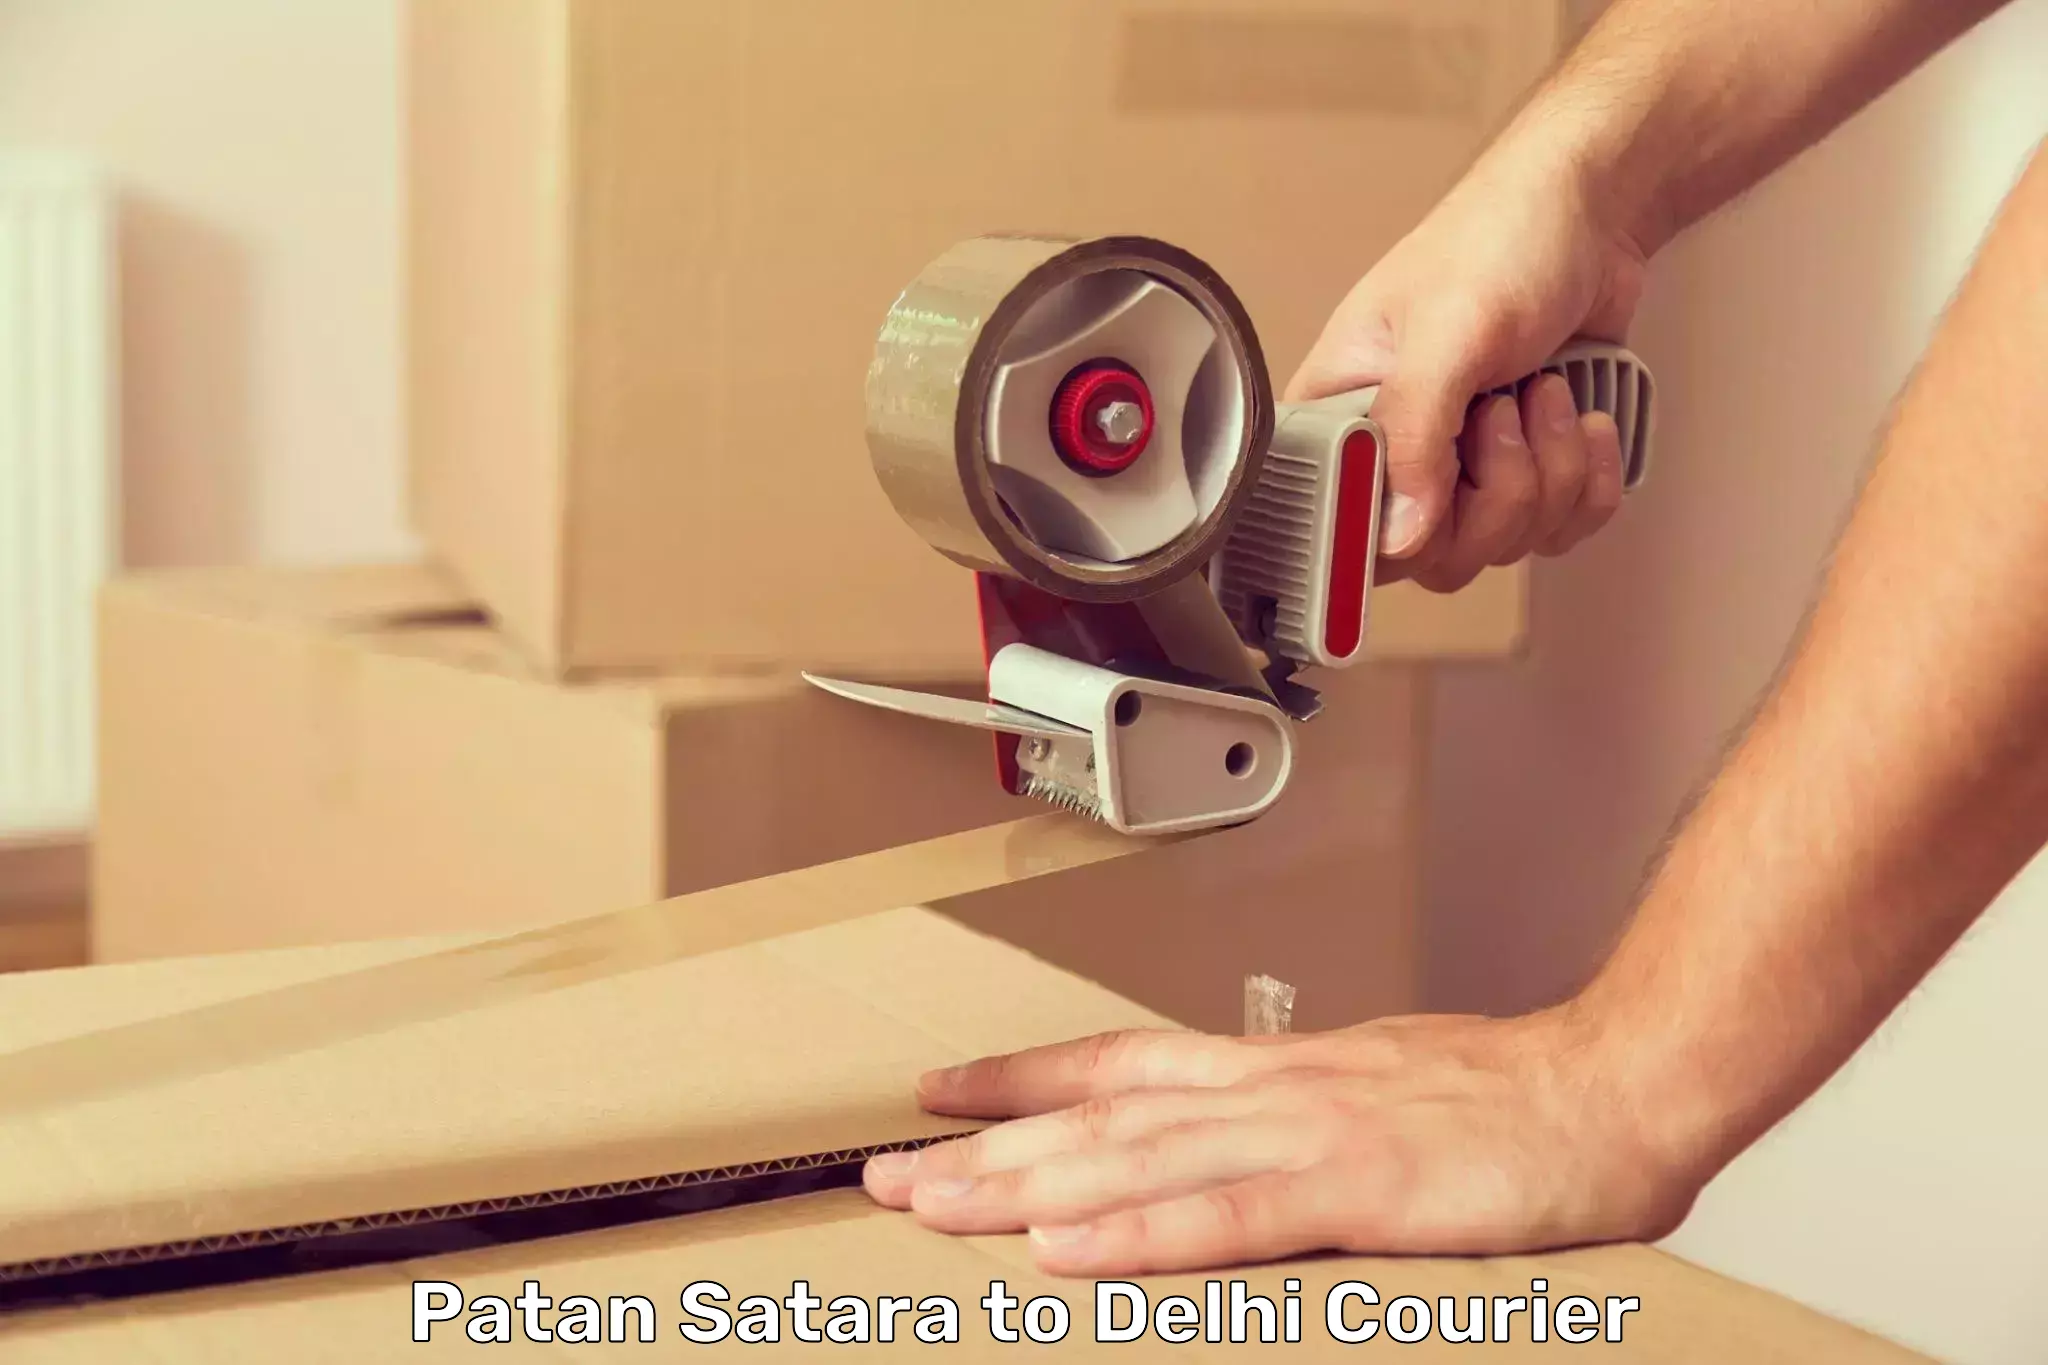 Doorstep delivery service Patan Satara to NIT Delhi